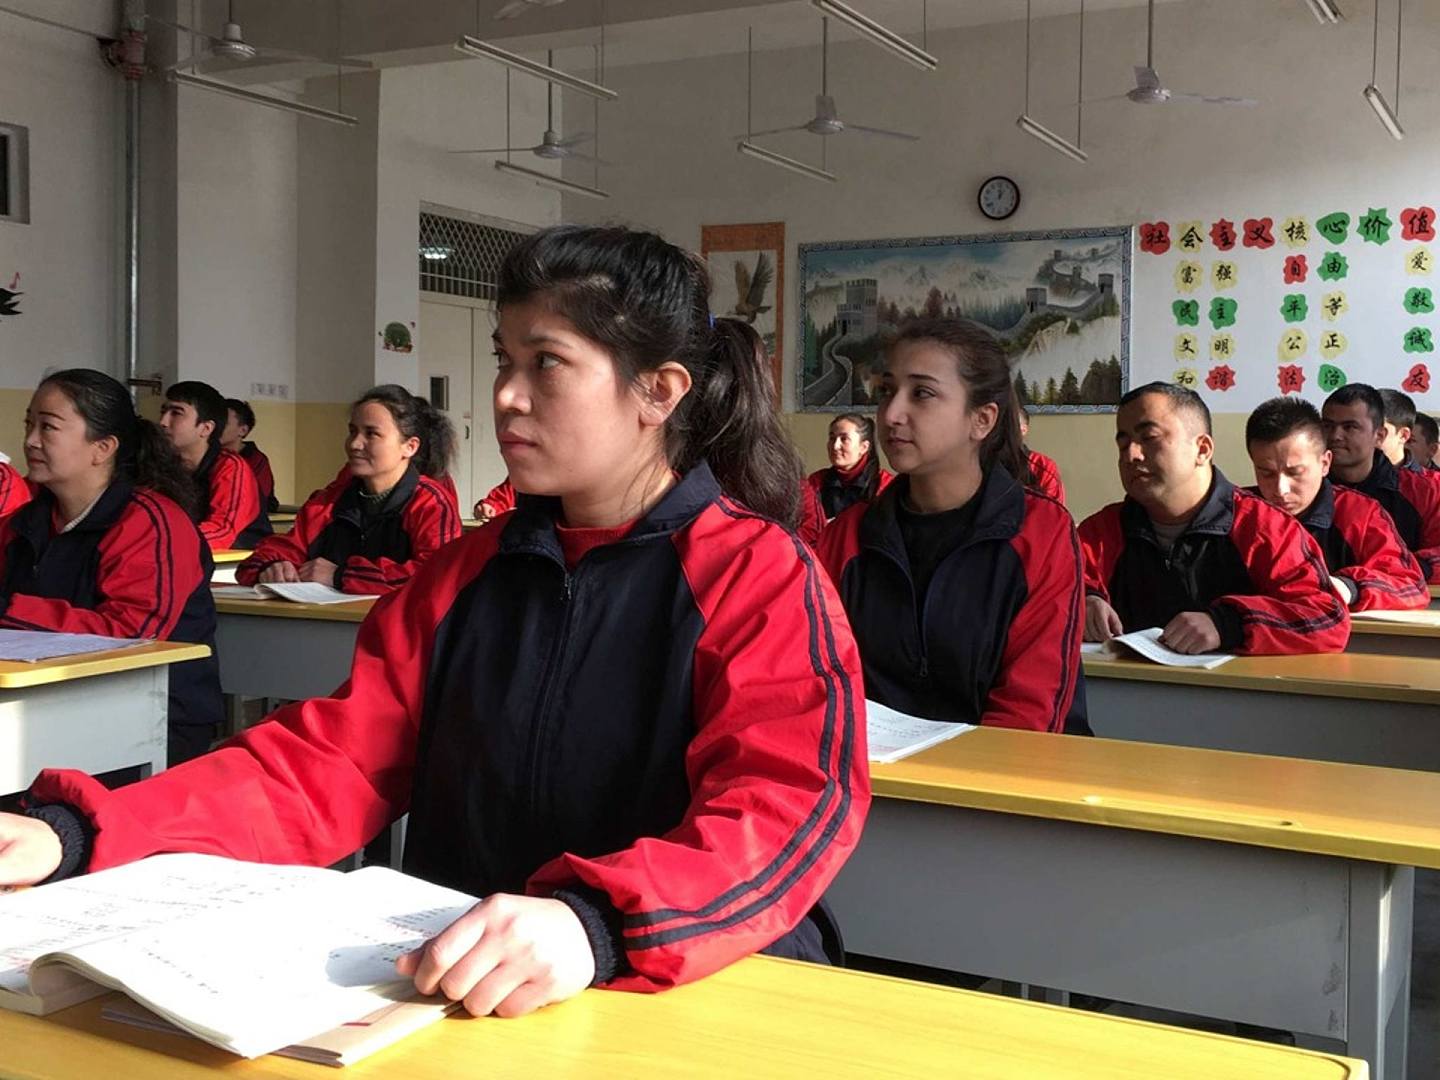 中国将这些地方称为“教育转化培训中心”，美欧国家则称为“再教育营”。（Reuters）